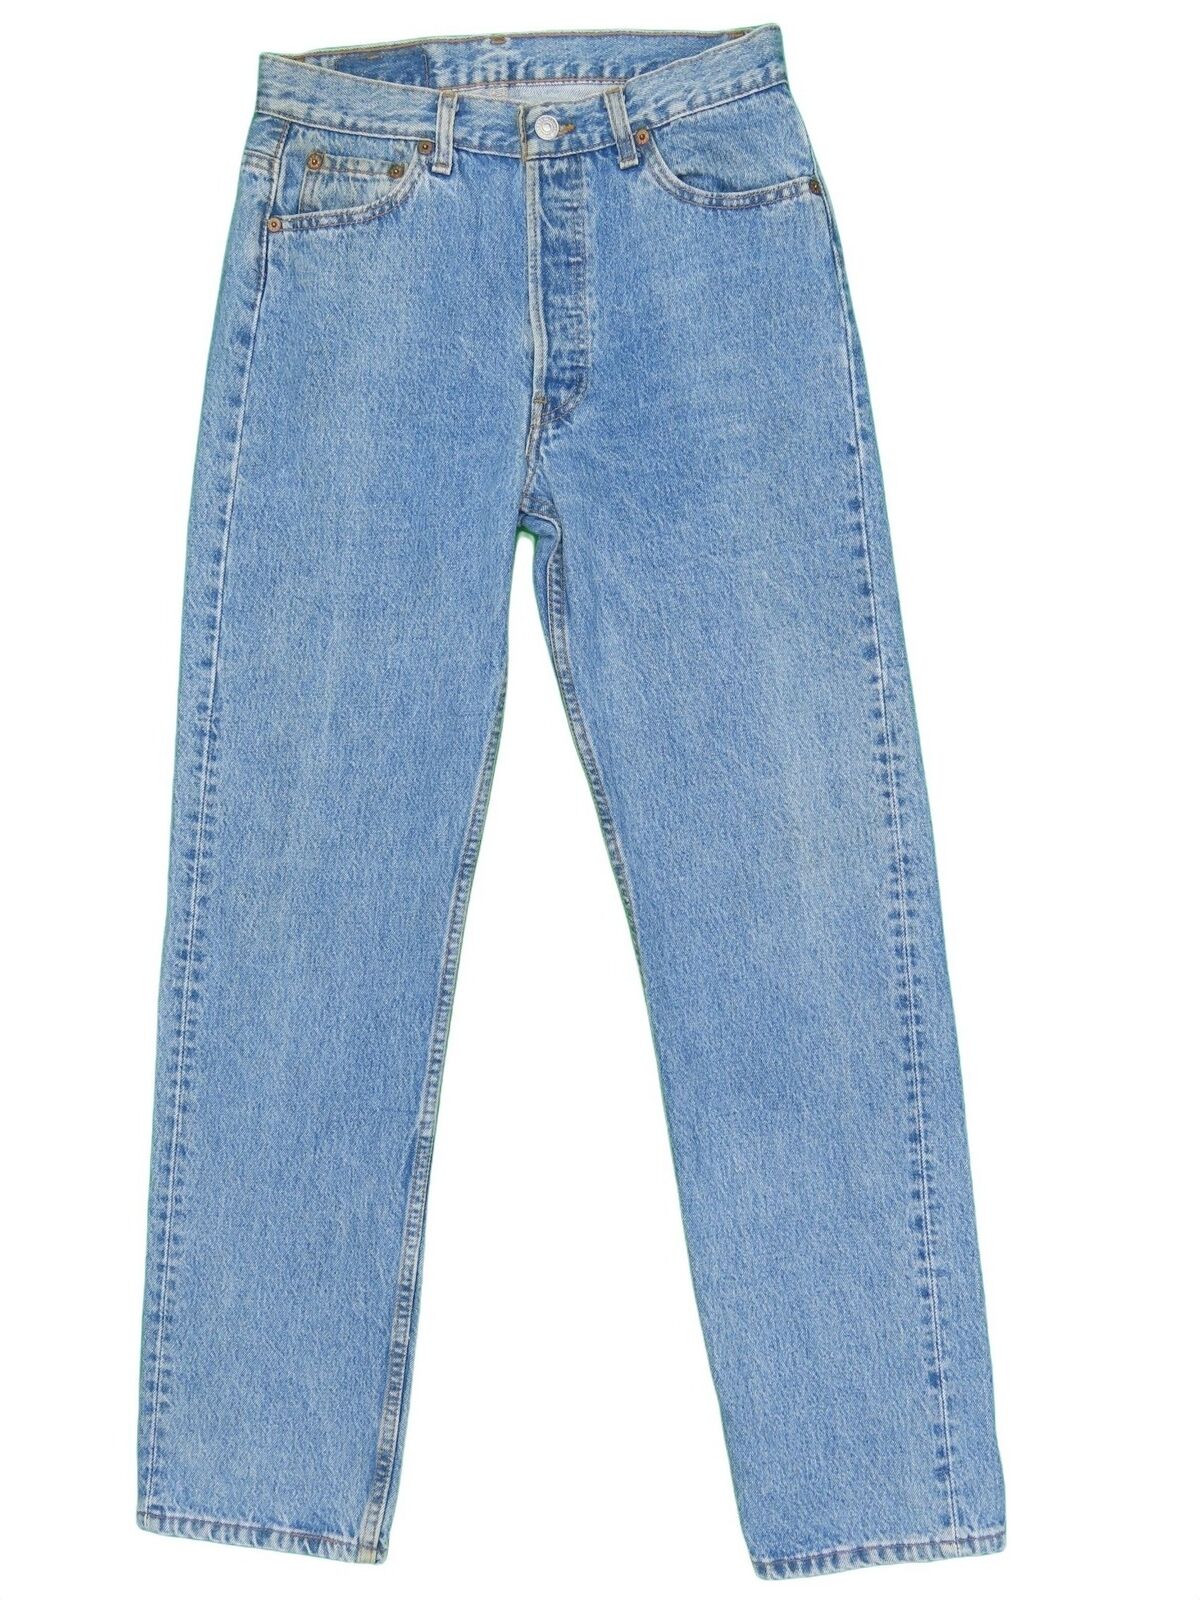 1990s Vintage Levis 501 Jeans 28x31 - image 1